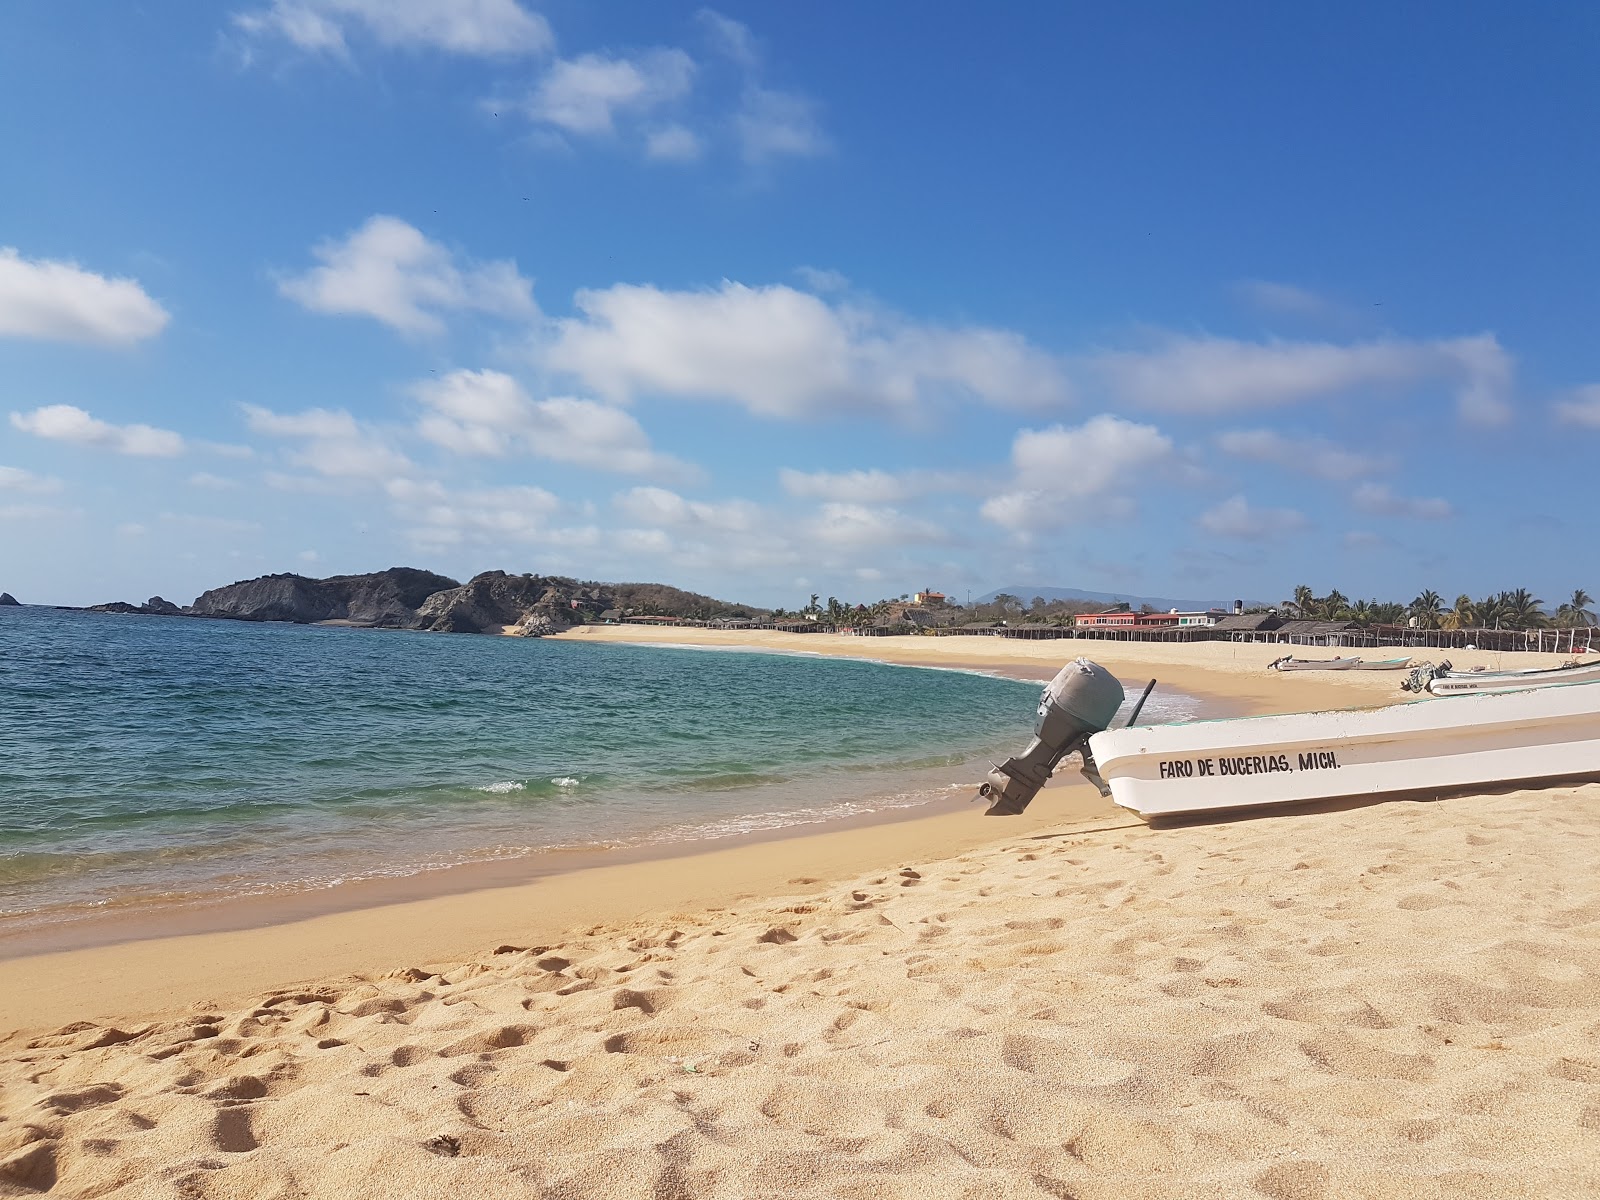 Foto de Playa el Faro - lugar popular entre los conocedores del relax